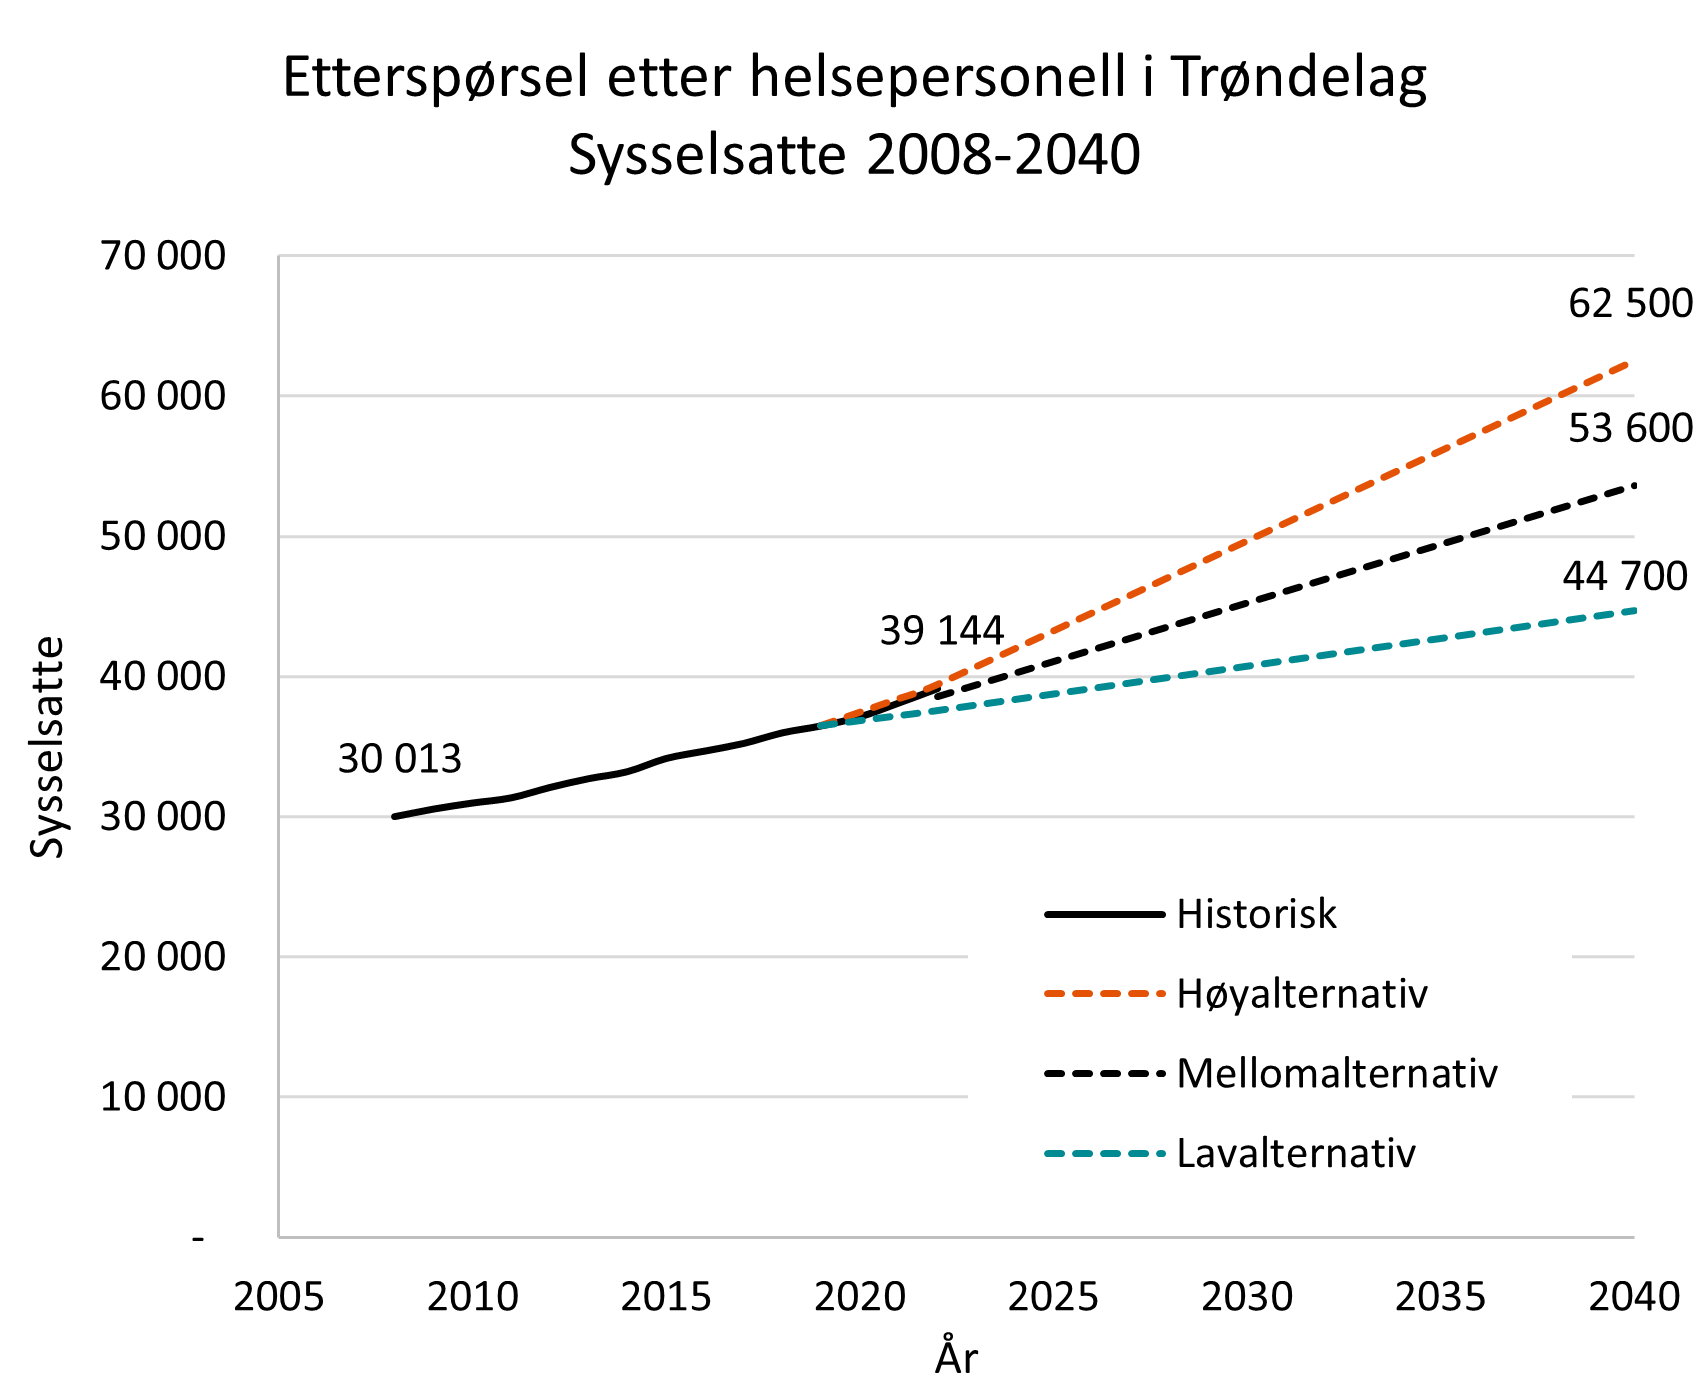 Helsepersonell i Trøndelag 2008-2040